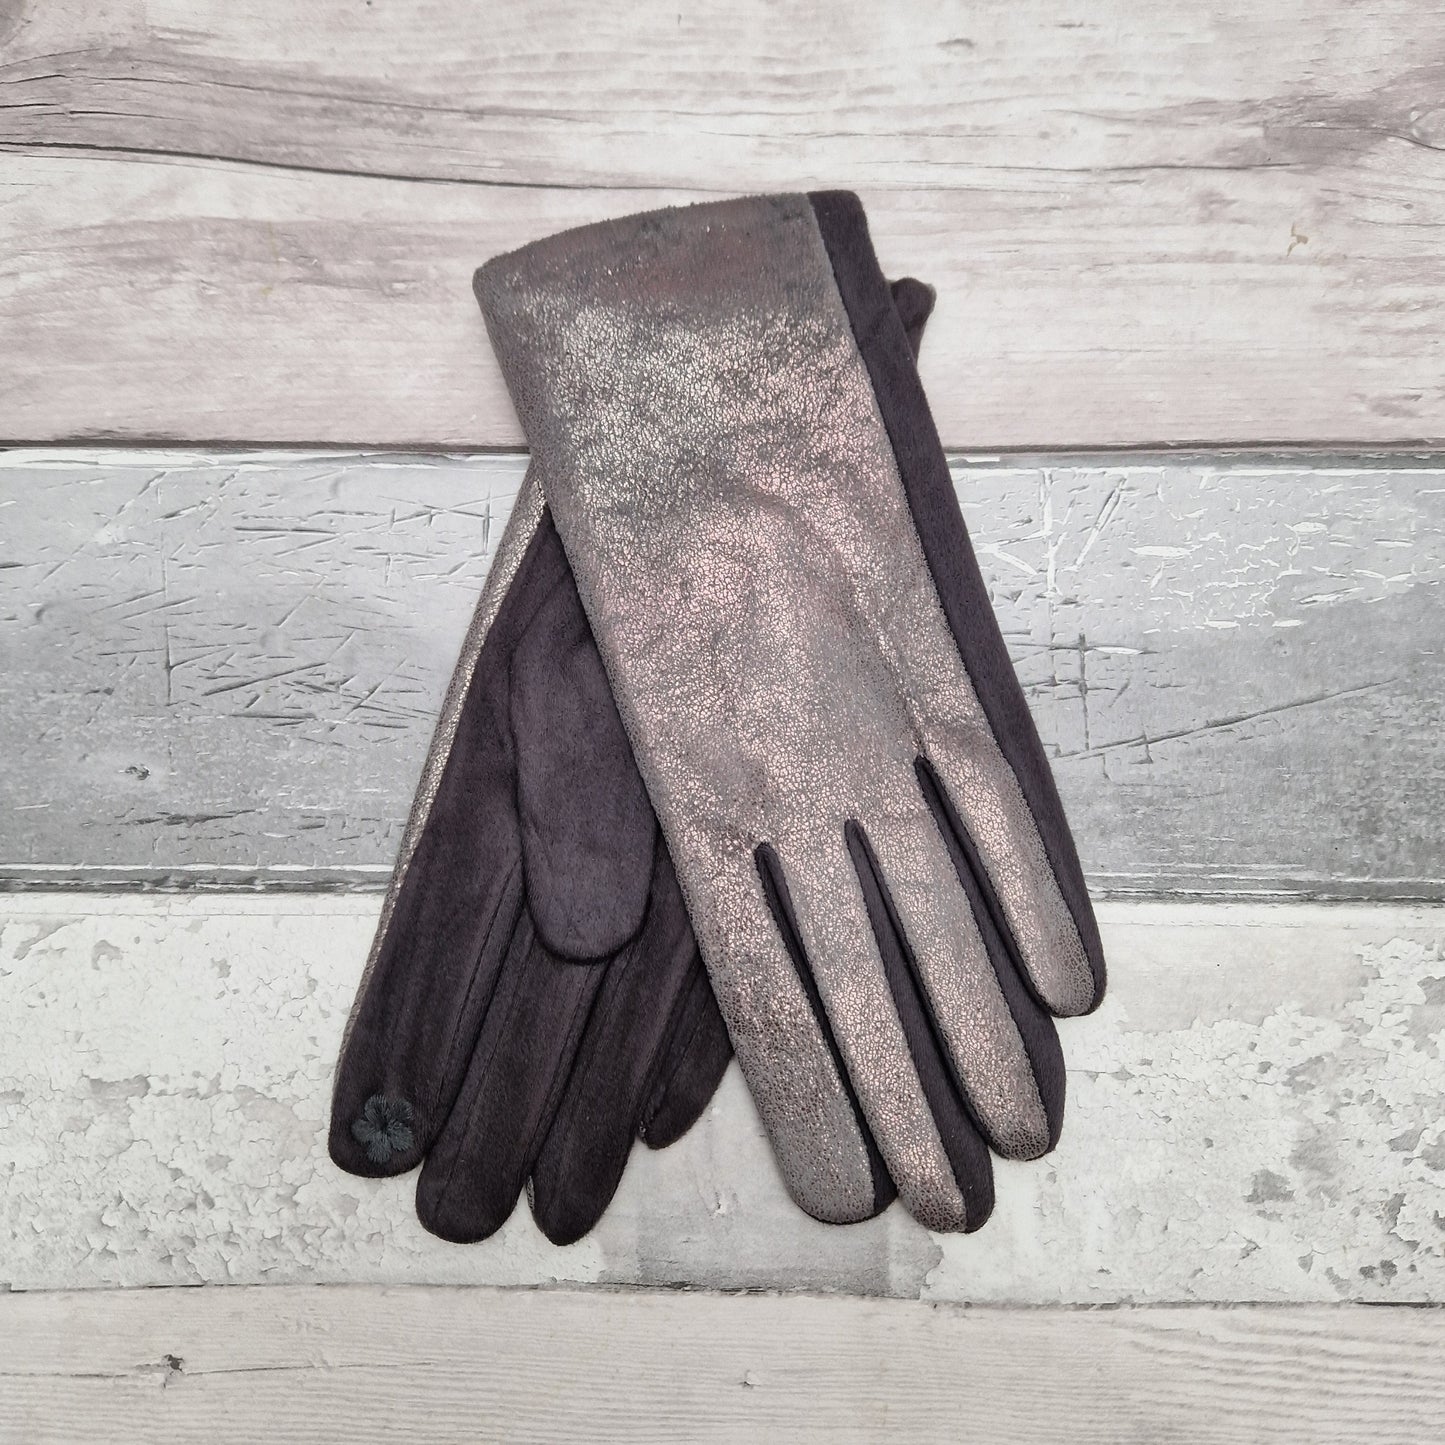 Dark grey gloves with metallic finish.